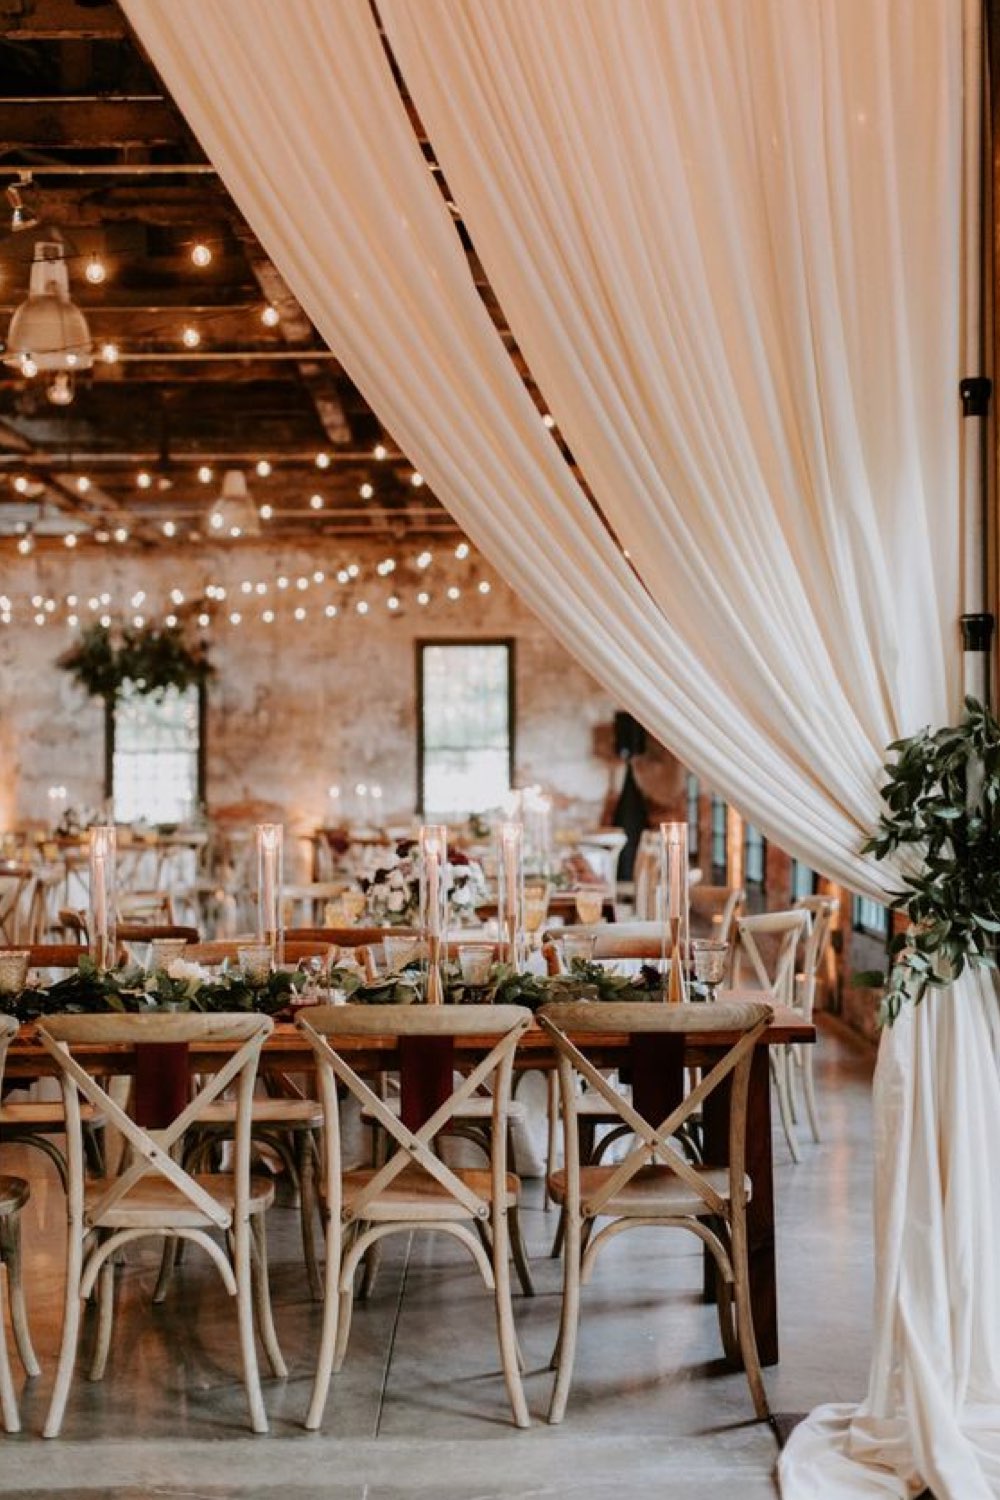 decoration mariage champetre romantique salle de réception voilage table chaise en bois guirlande lumineuse au plafond